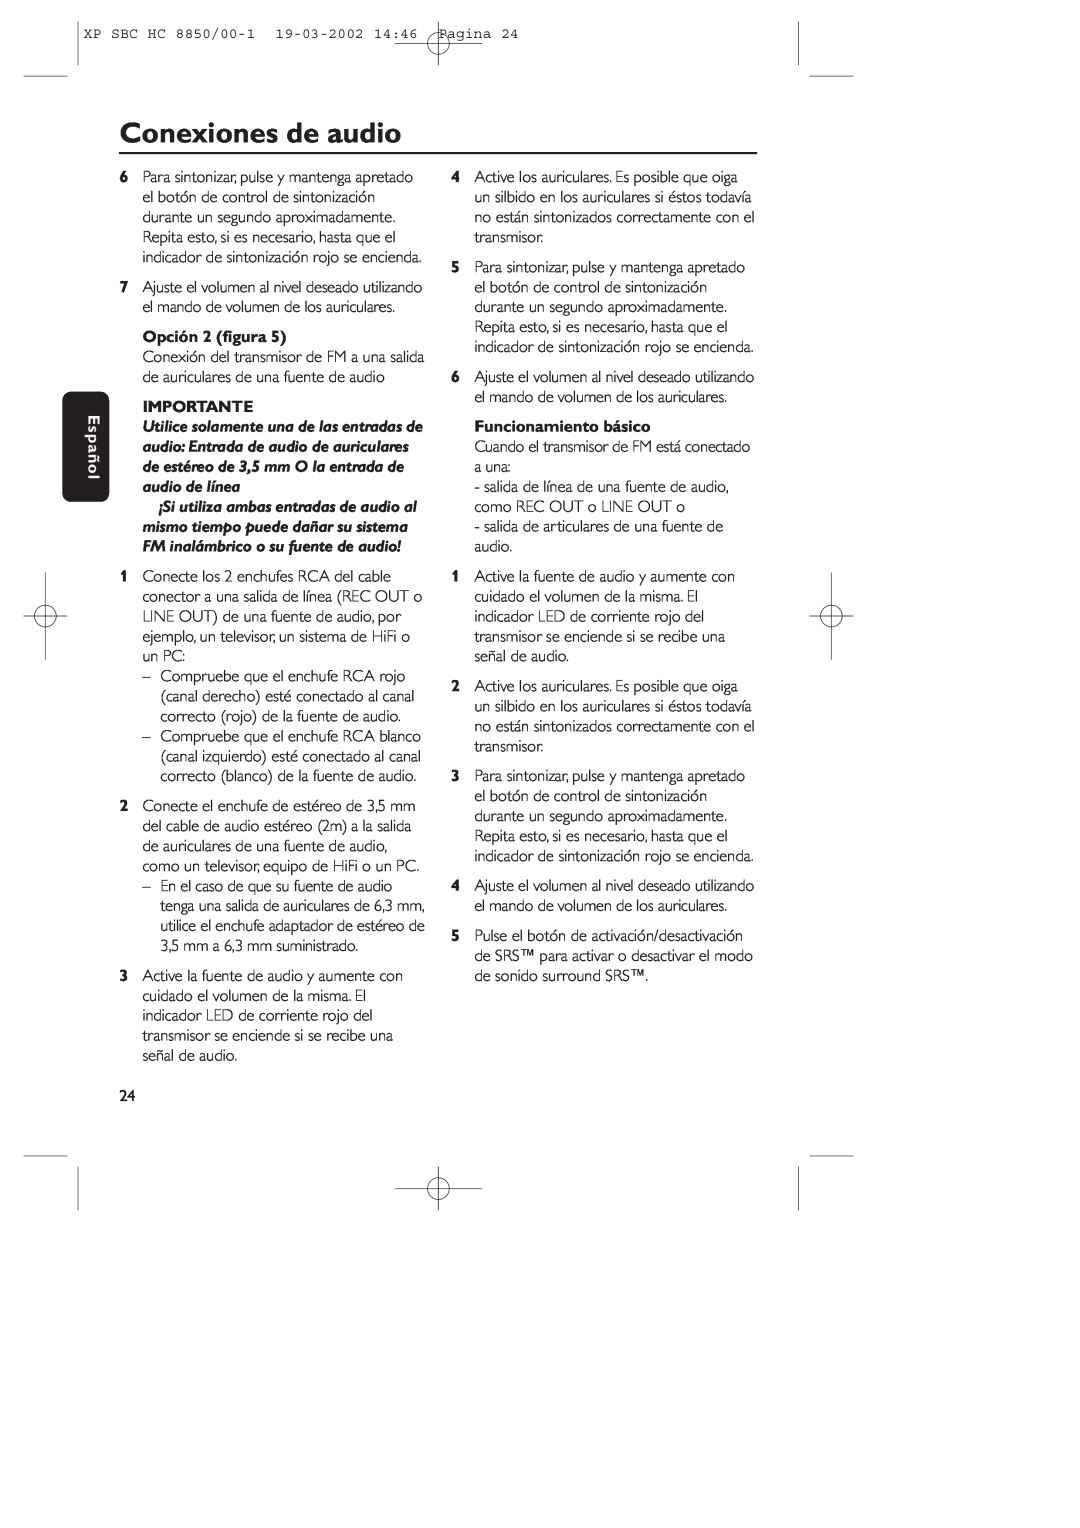 Philips HC8850 manual Conexiones de audio, Español, Opción 2 ﬁgura, Importante, Funcionamiento básico 